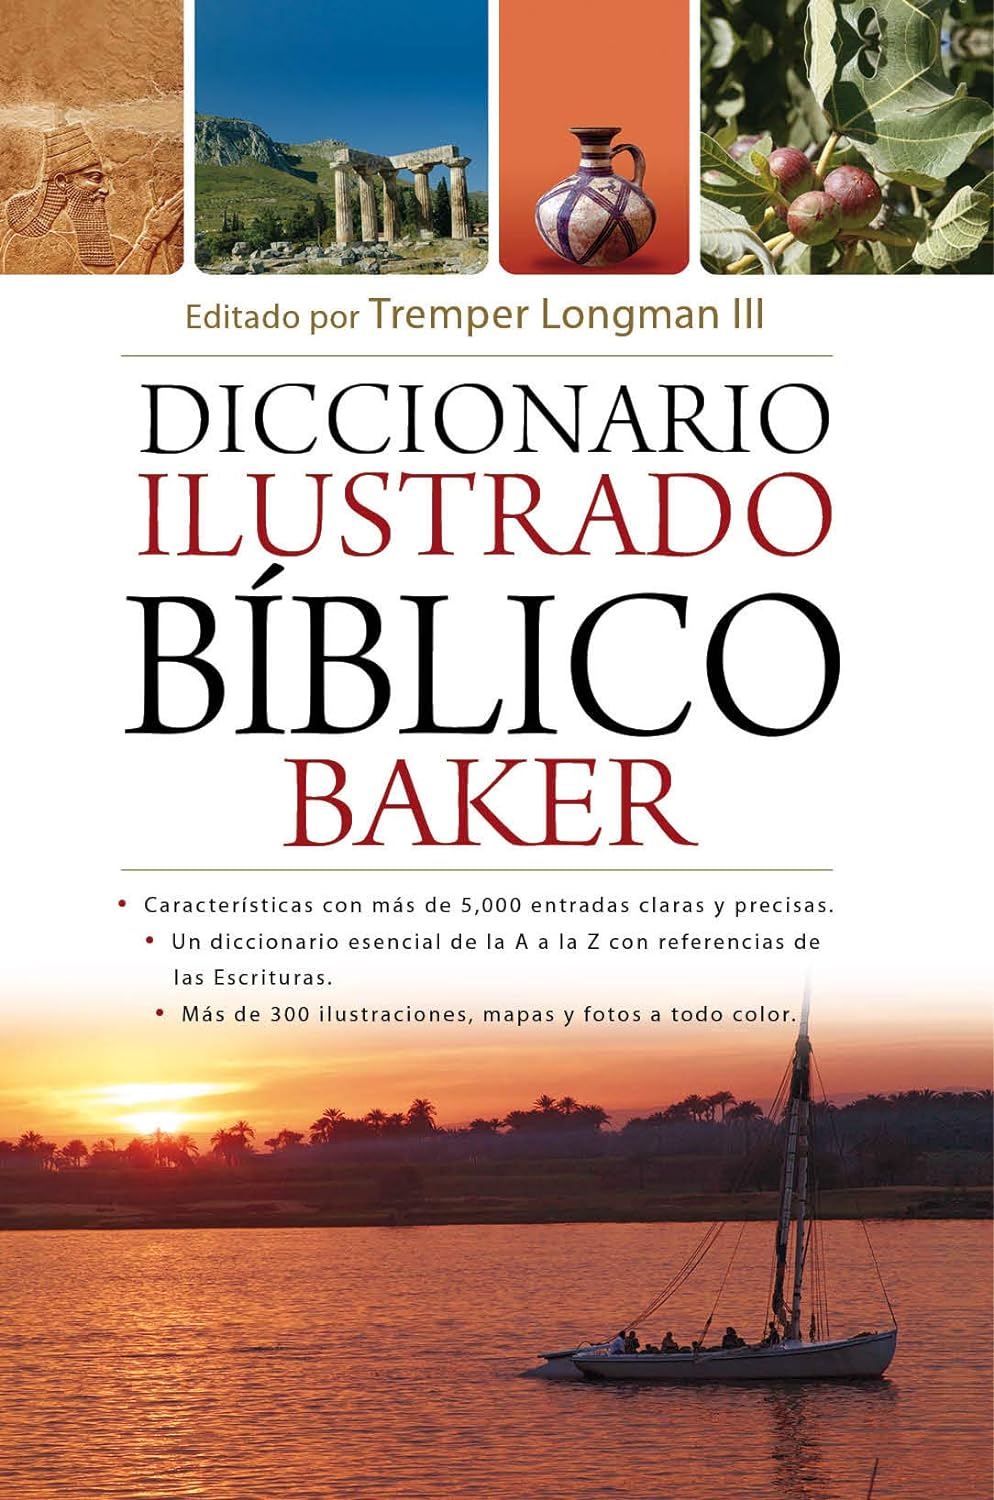 Diccionario Bíblico Ilustrado Baker, Tremper Longman III